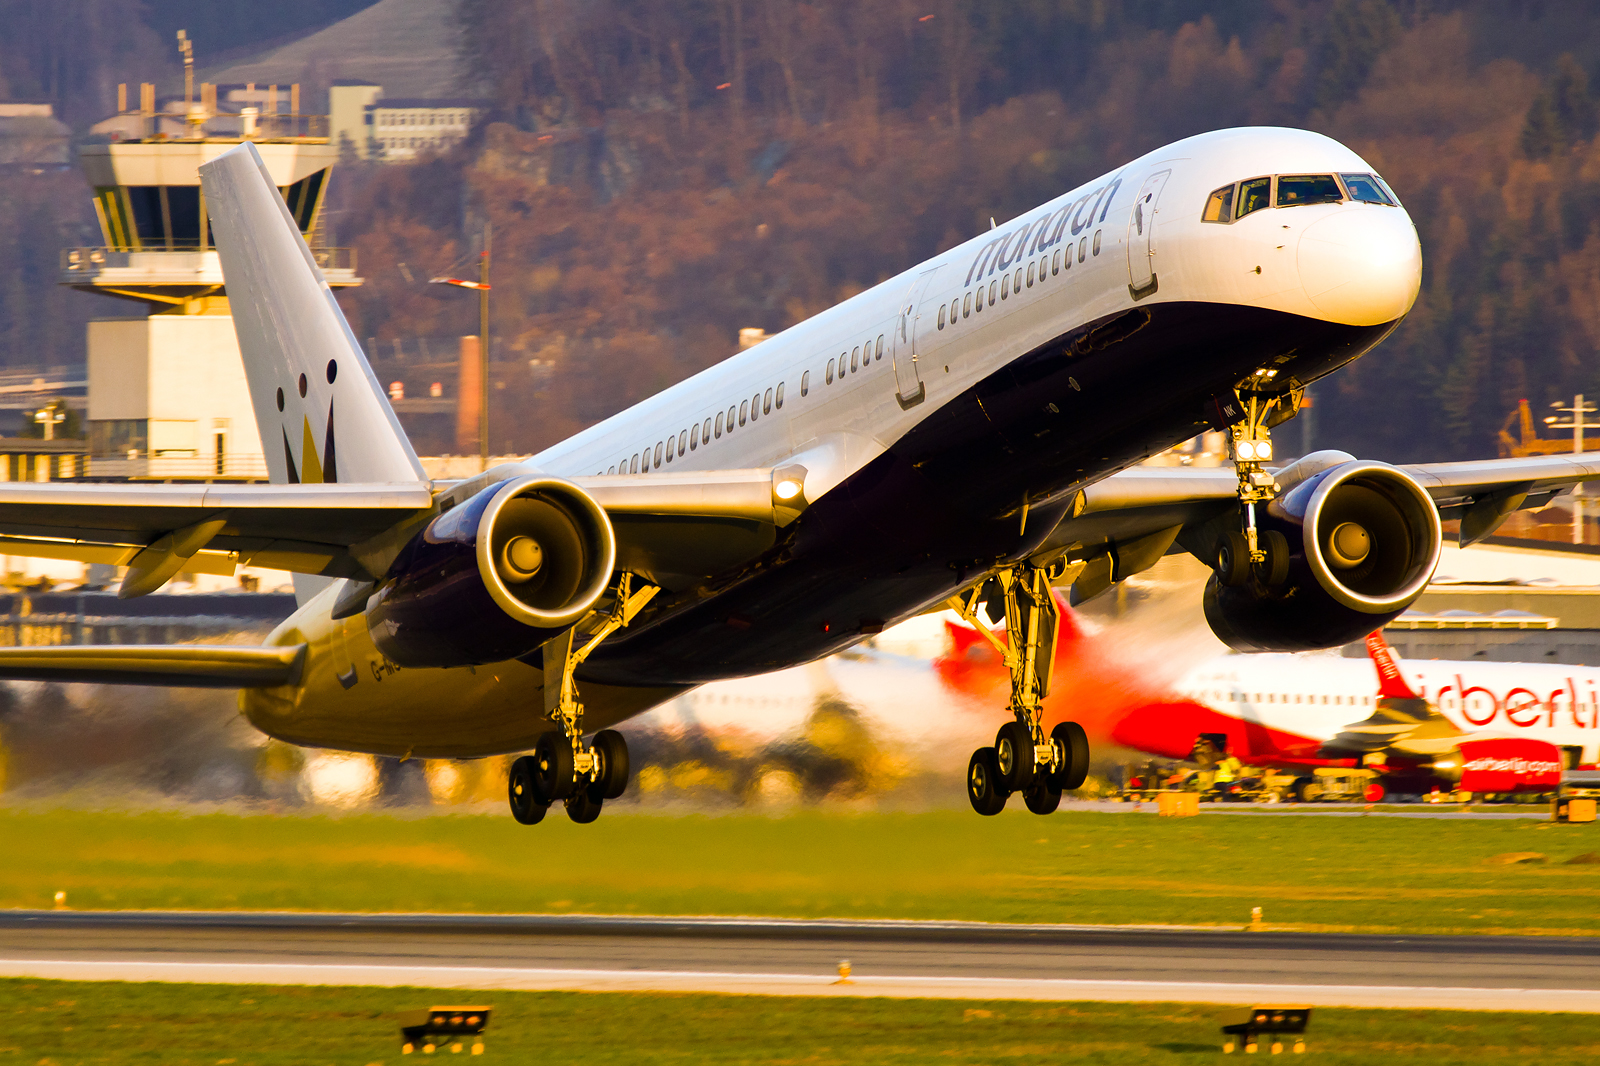 Die Boeing 757 von Monarch beim Start in die Abendsonne. Die 757 ist das derzeit größte Flugzeug in Innsbruck